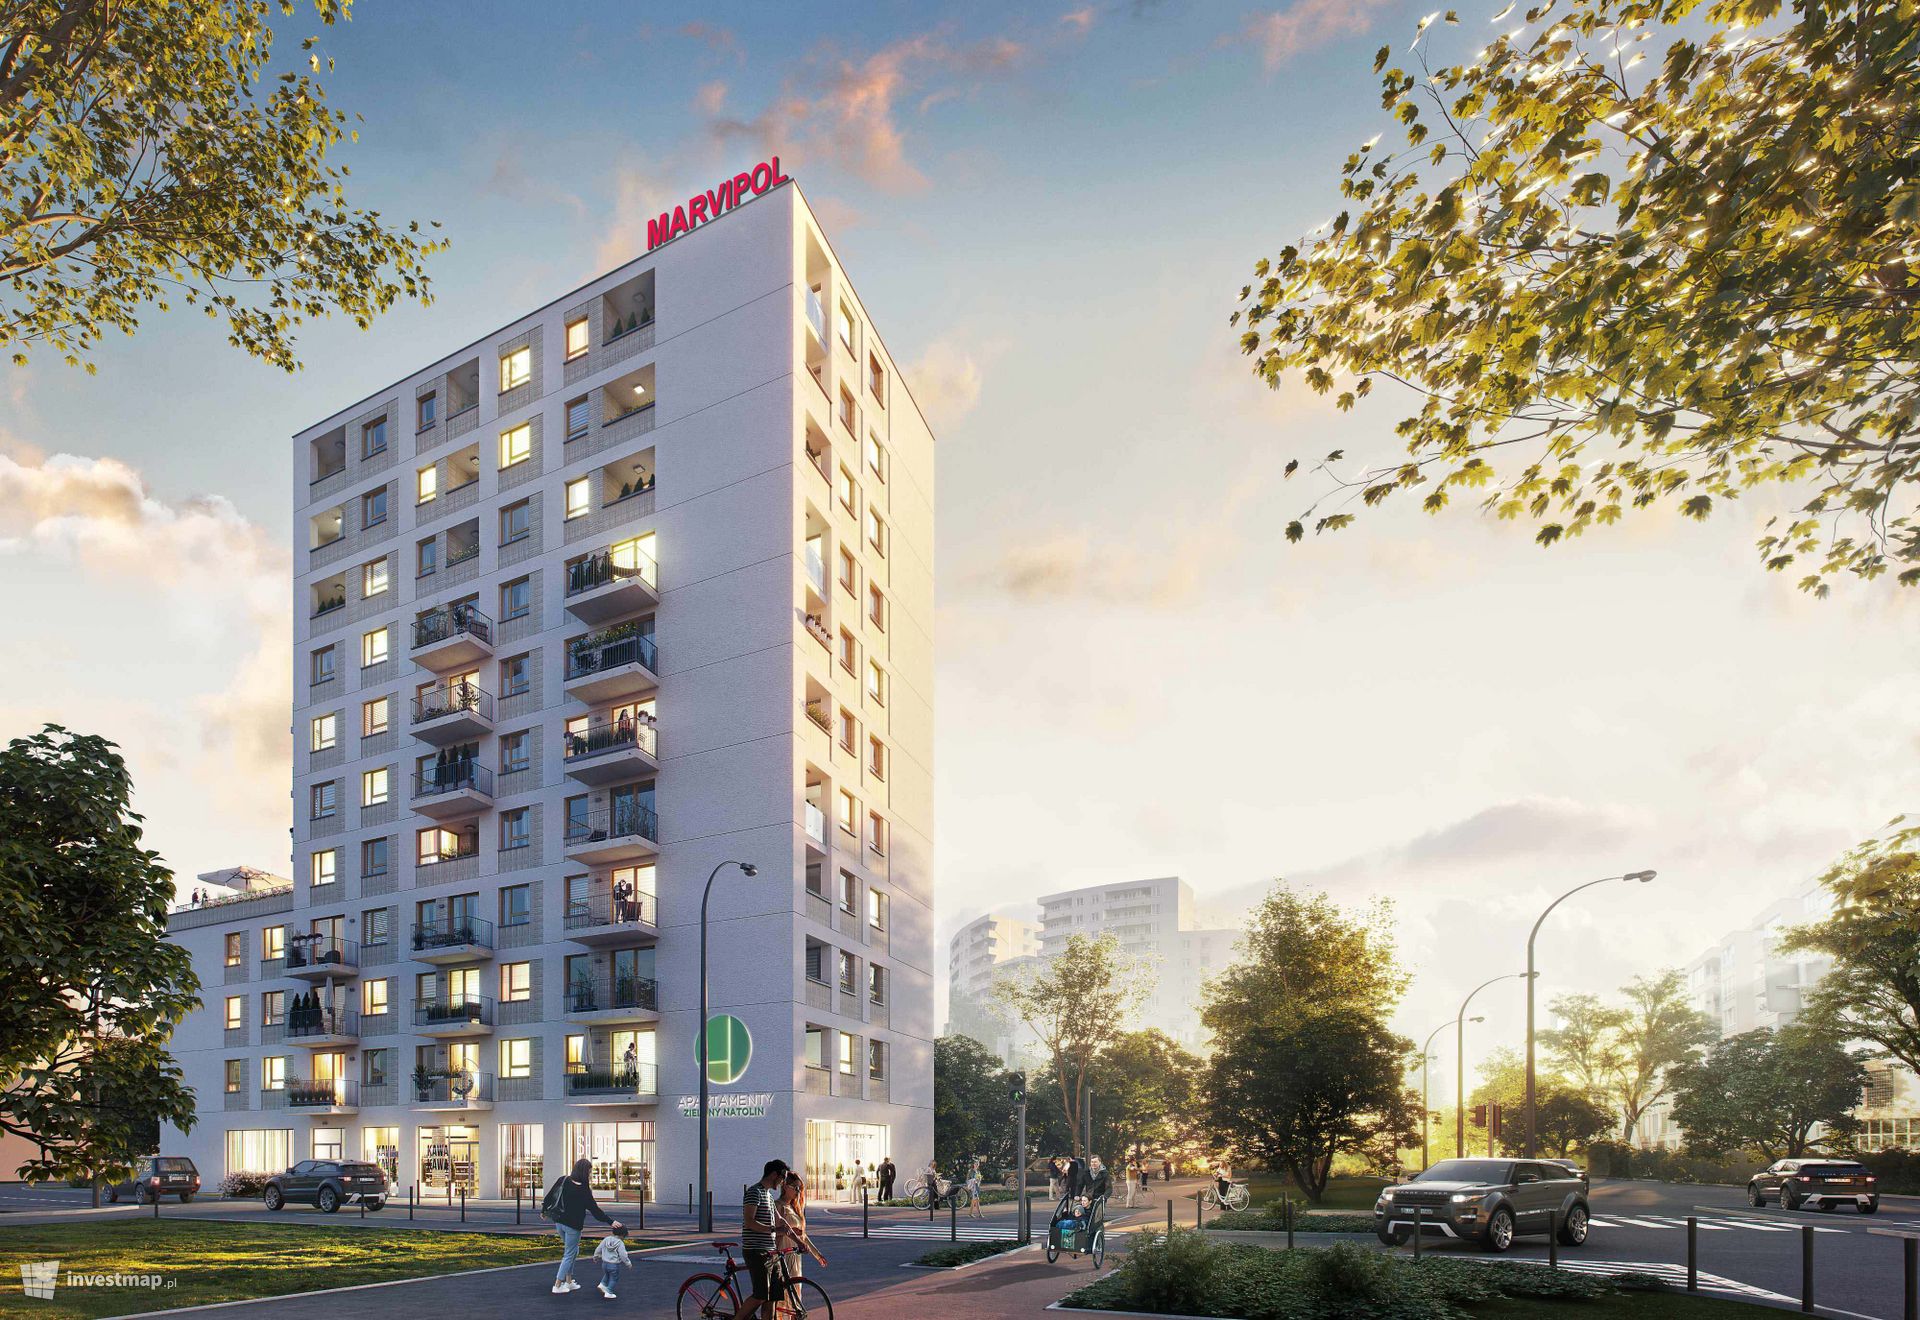 Marvipol realizuje na warszawskim Ursynowie nową inwestycję Apartamenty Zielony Natolin 